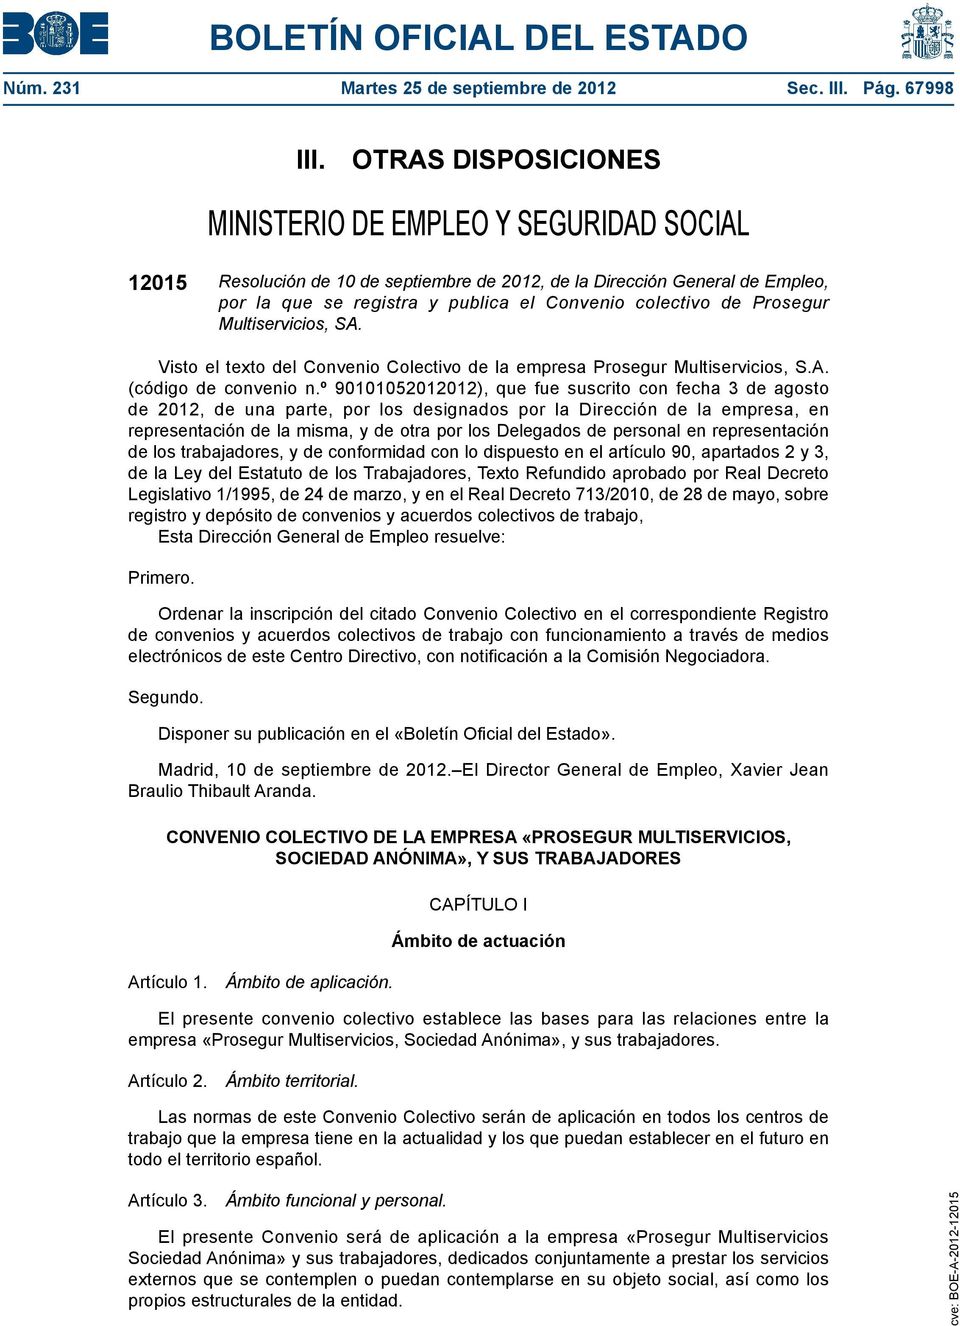 Prosegur Multiservicios, SA. Visto el texto del Convenio Colectivo de la empresa Prosegur Multiservicios, S.A. (código de convenio n.